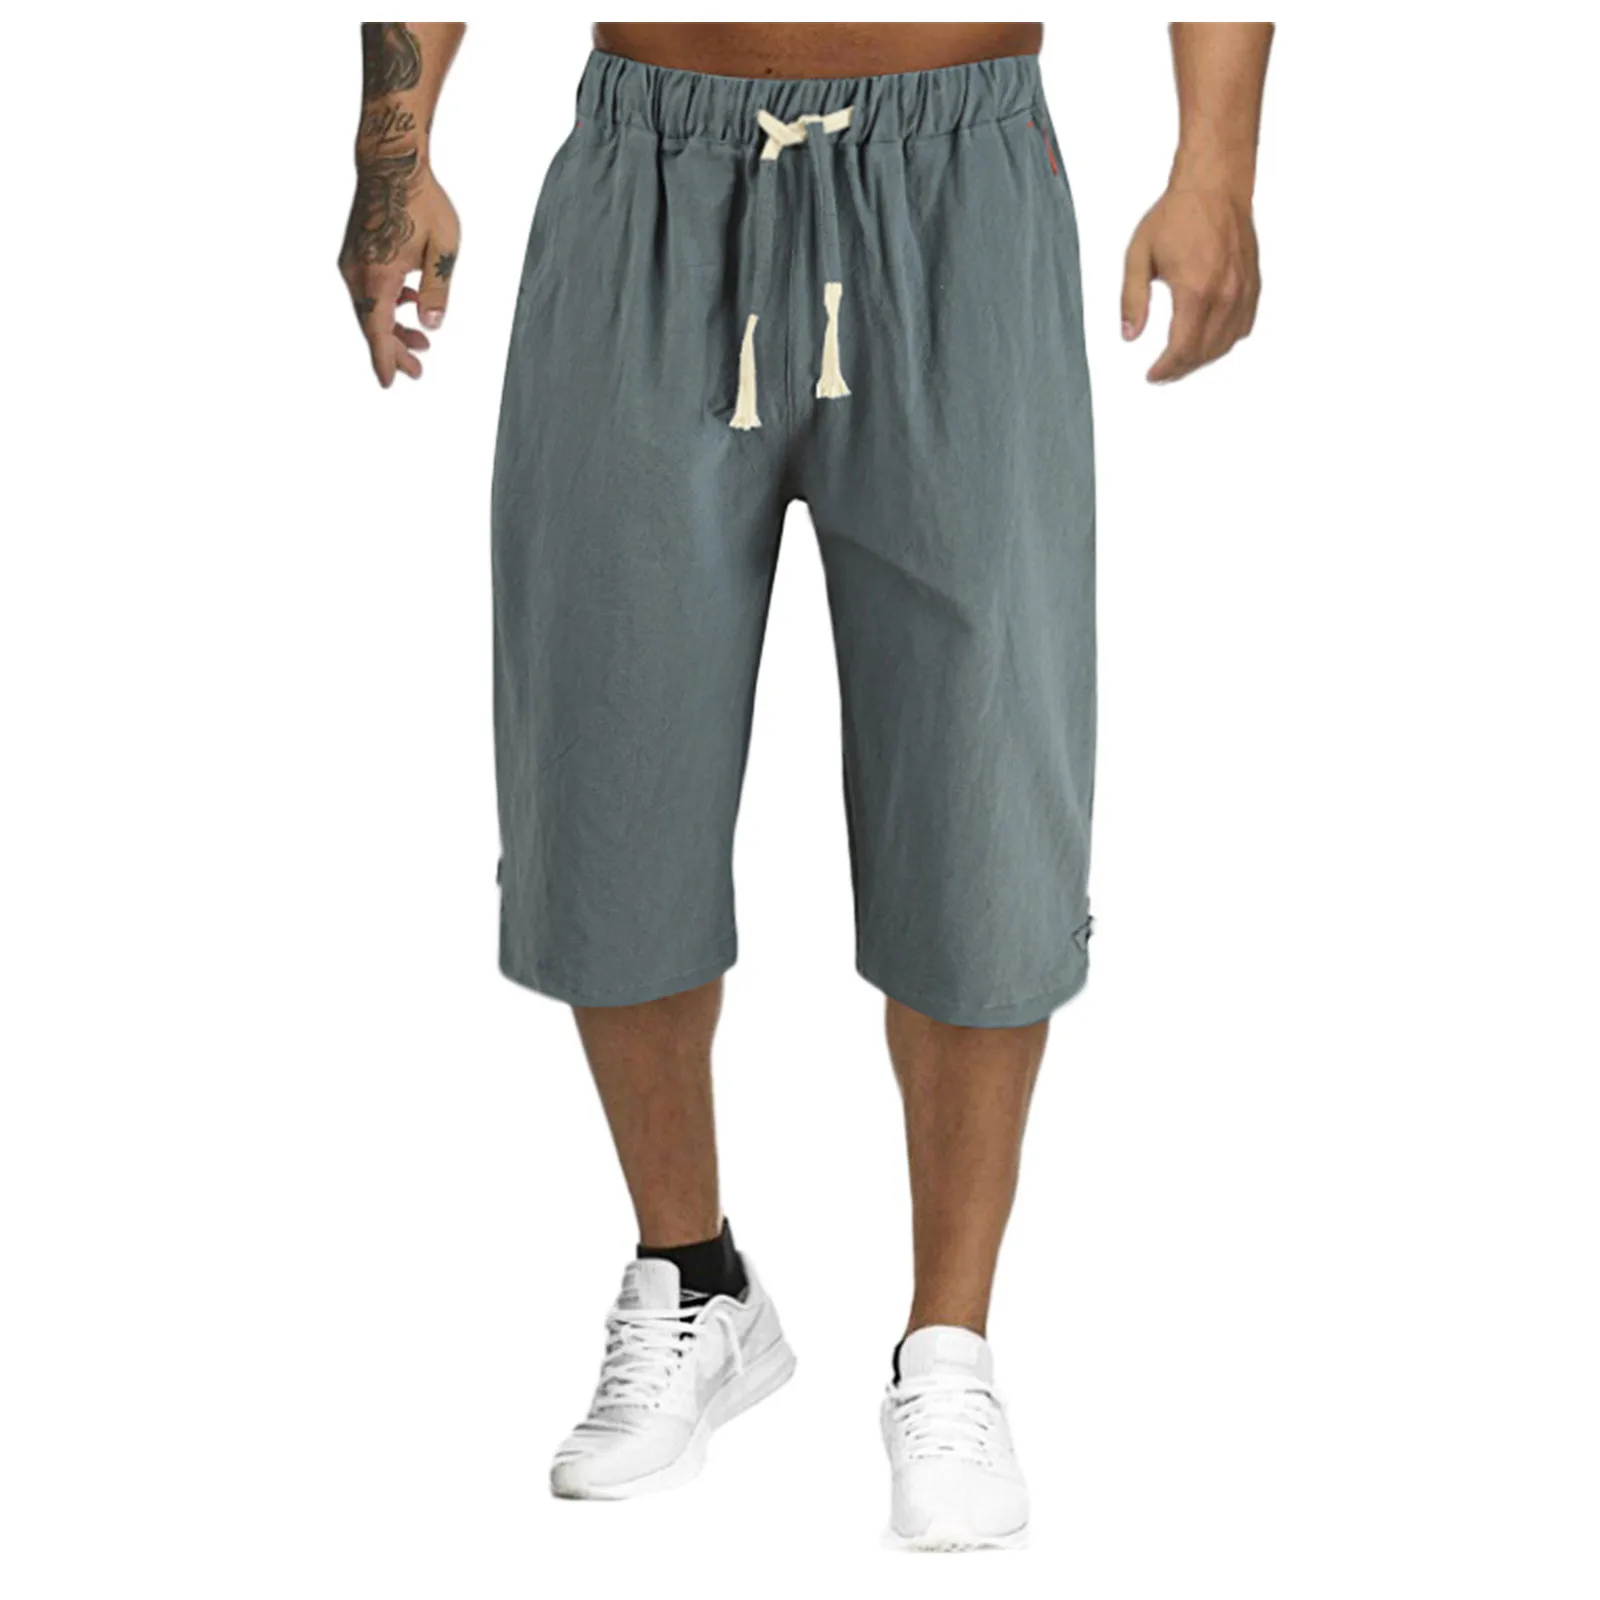 

Брюки мужские хлопково-льняные укороченные, дышащие однотонные льняные шорты, штаны для фитнеса, уличная одежда, летние дышащие